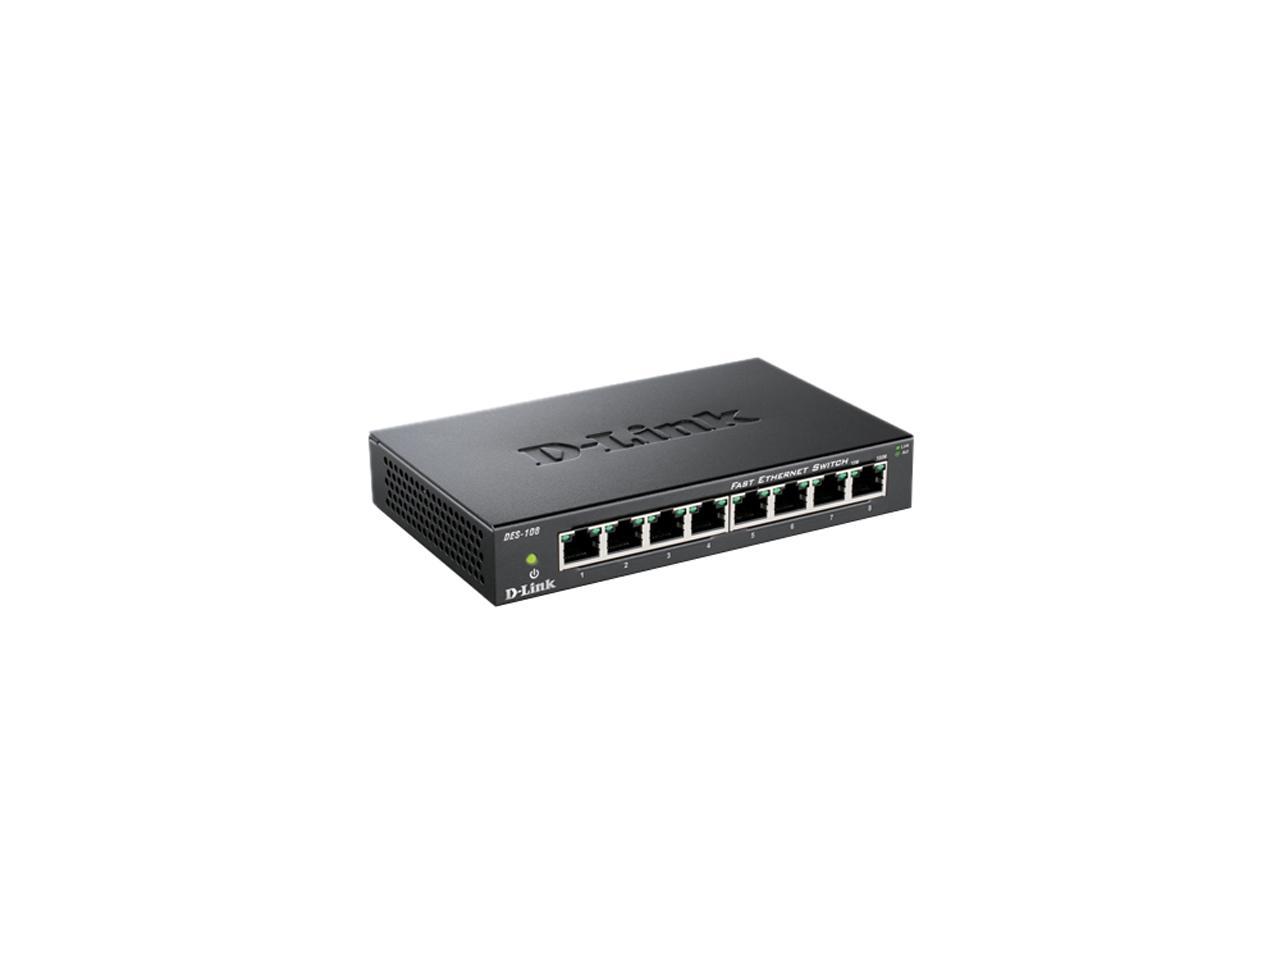 D-Link DES-108 Unmanaged 8-Port Fast Ethernet Switch